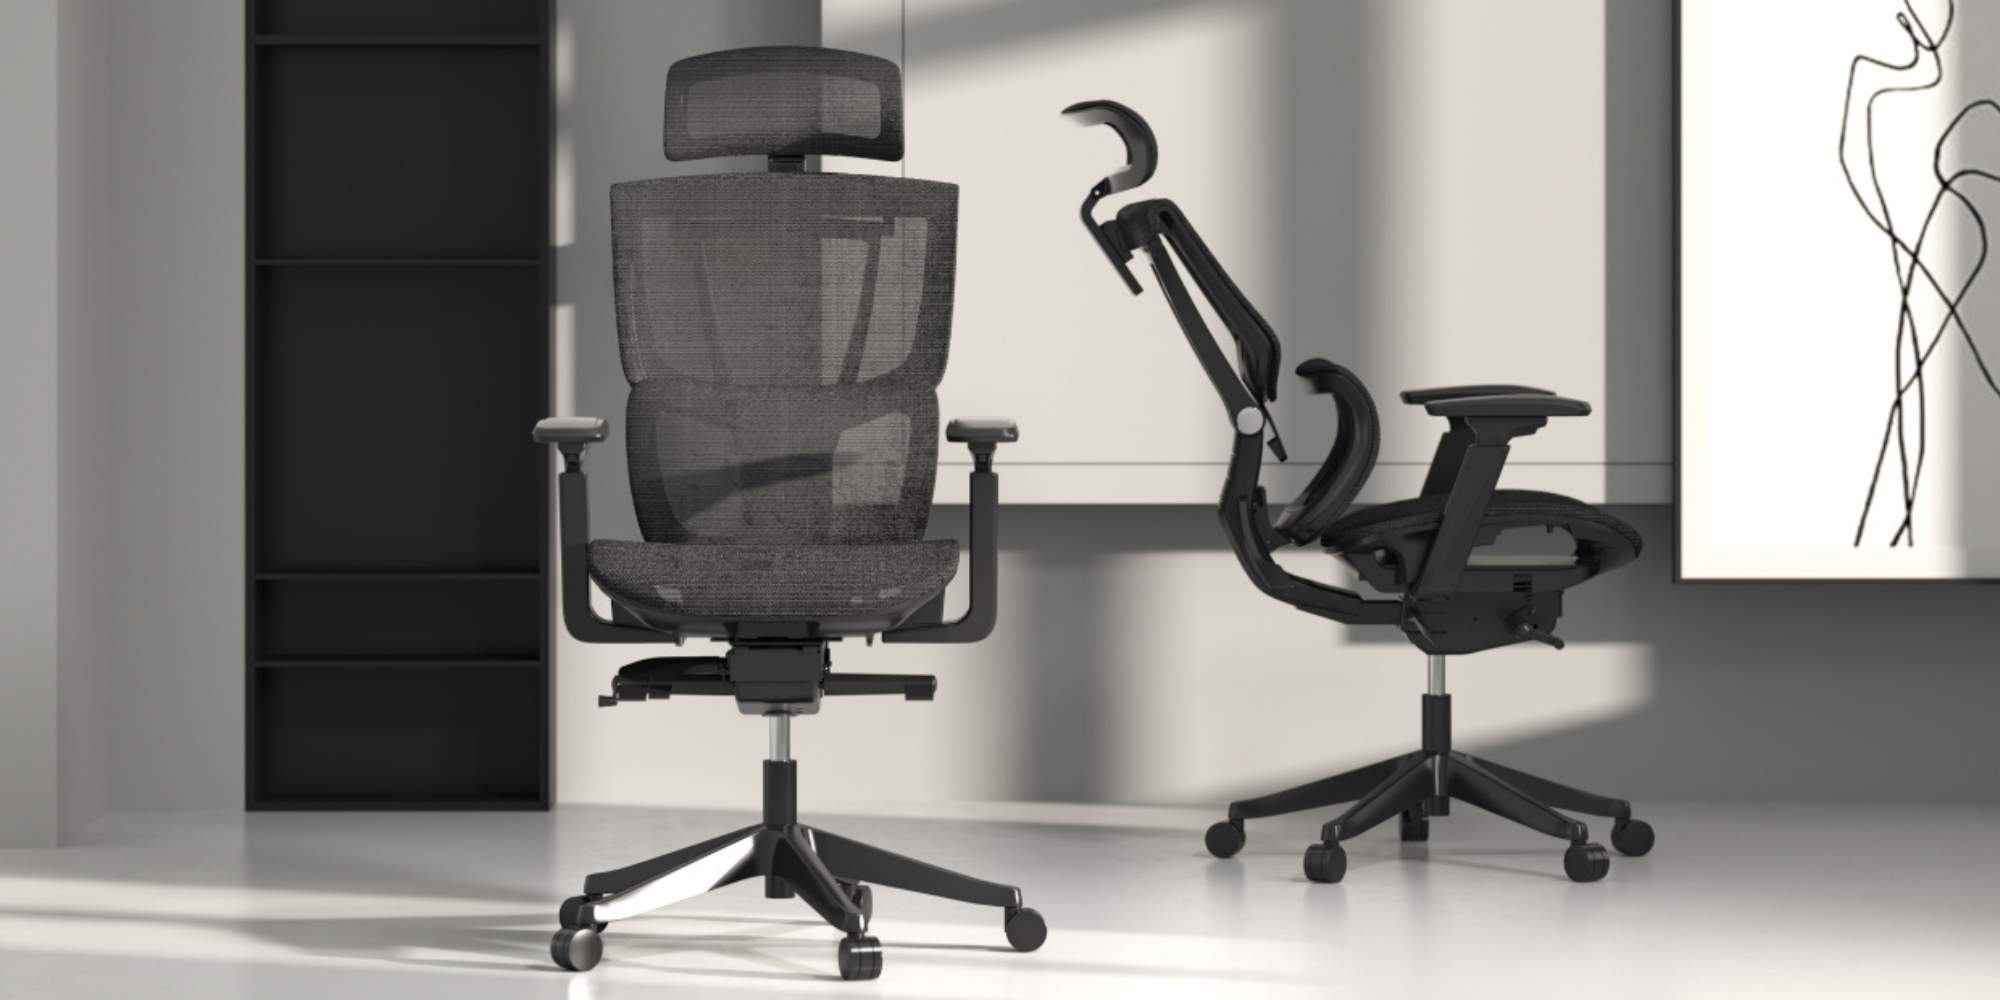 Revisión de la silla ergonómica FlexiSpot C7 Premium